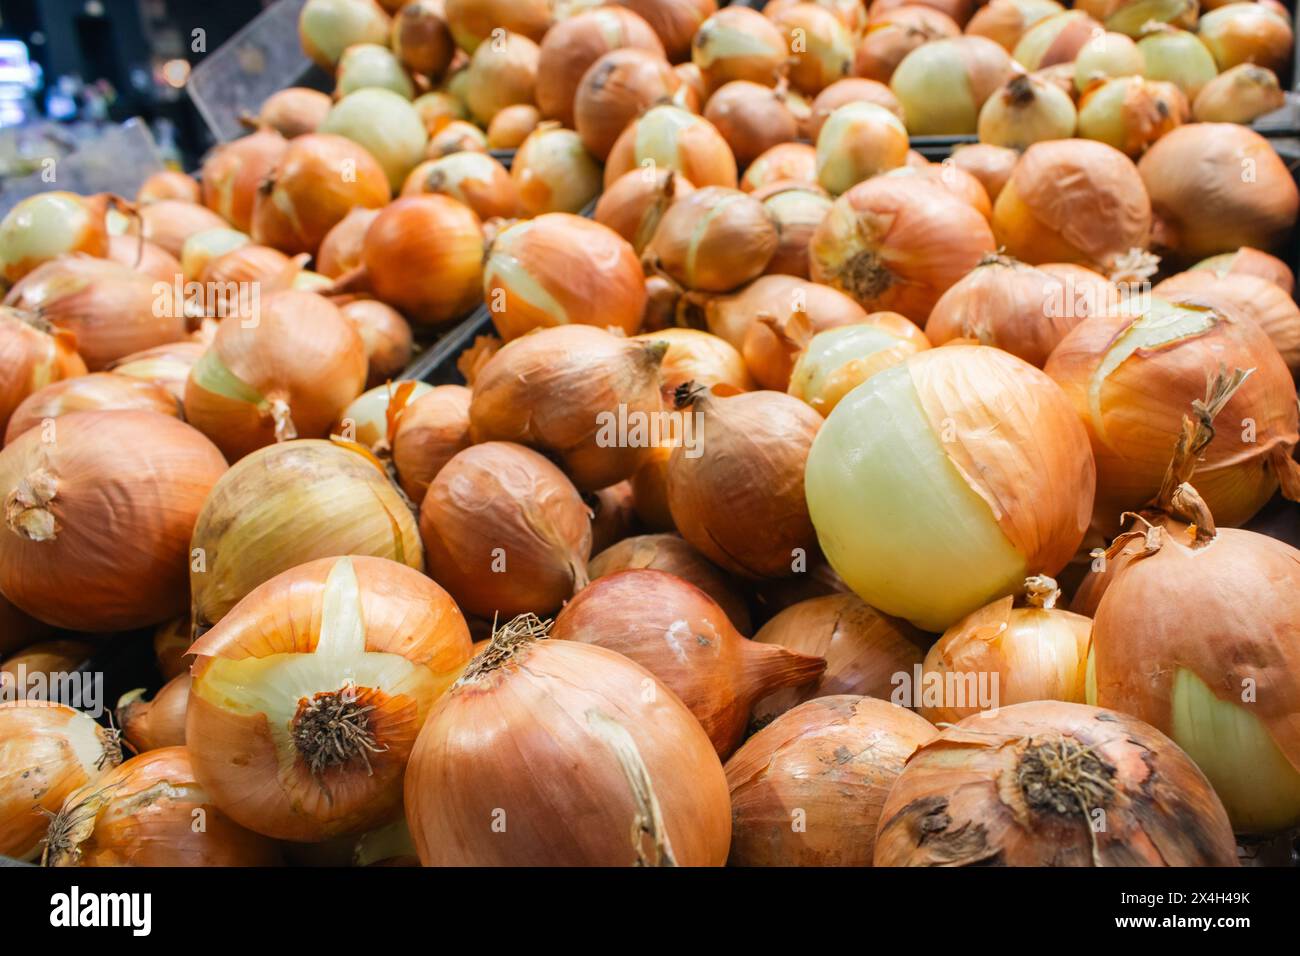 Gelbe Zwiebeln am Marktstand. Ungeschälte Zwiebeln im Karton. Hintergrund Zwiebelzwiebeln. Haufen Bio-Gemüse. Weiße Zwiebelernte Stockfoto